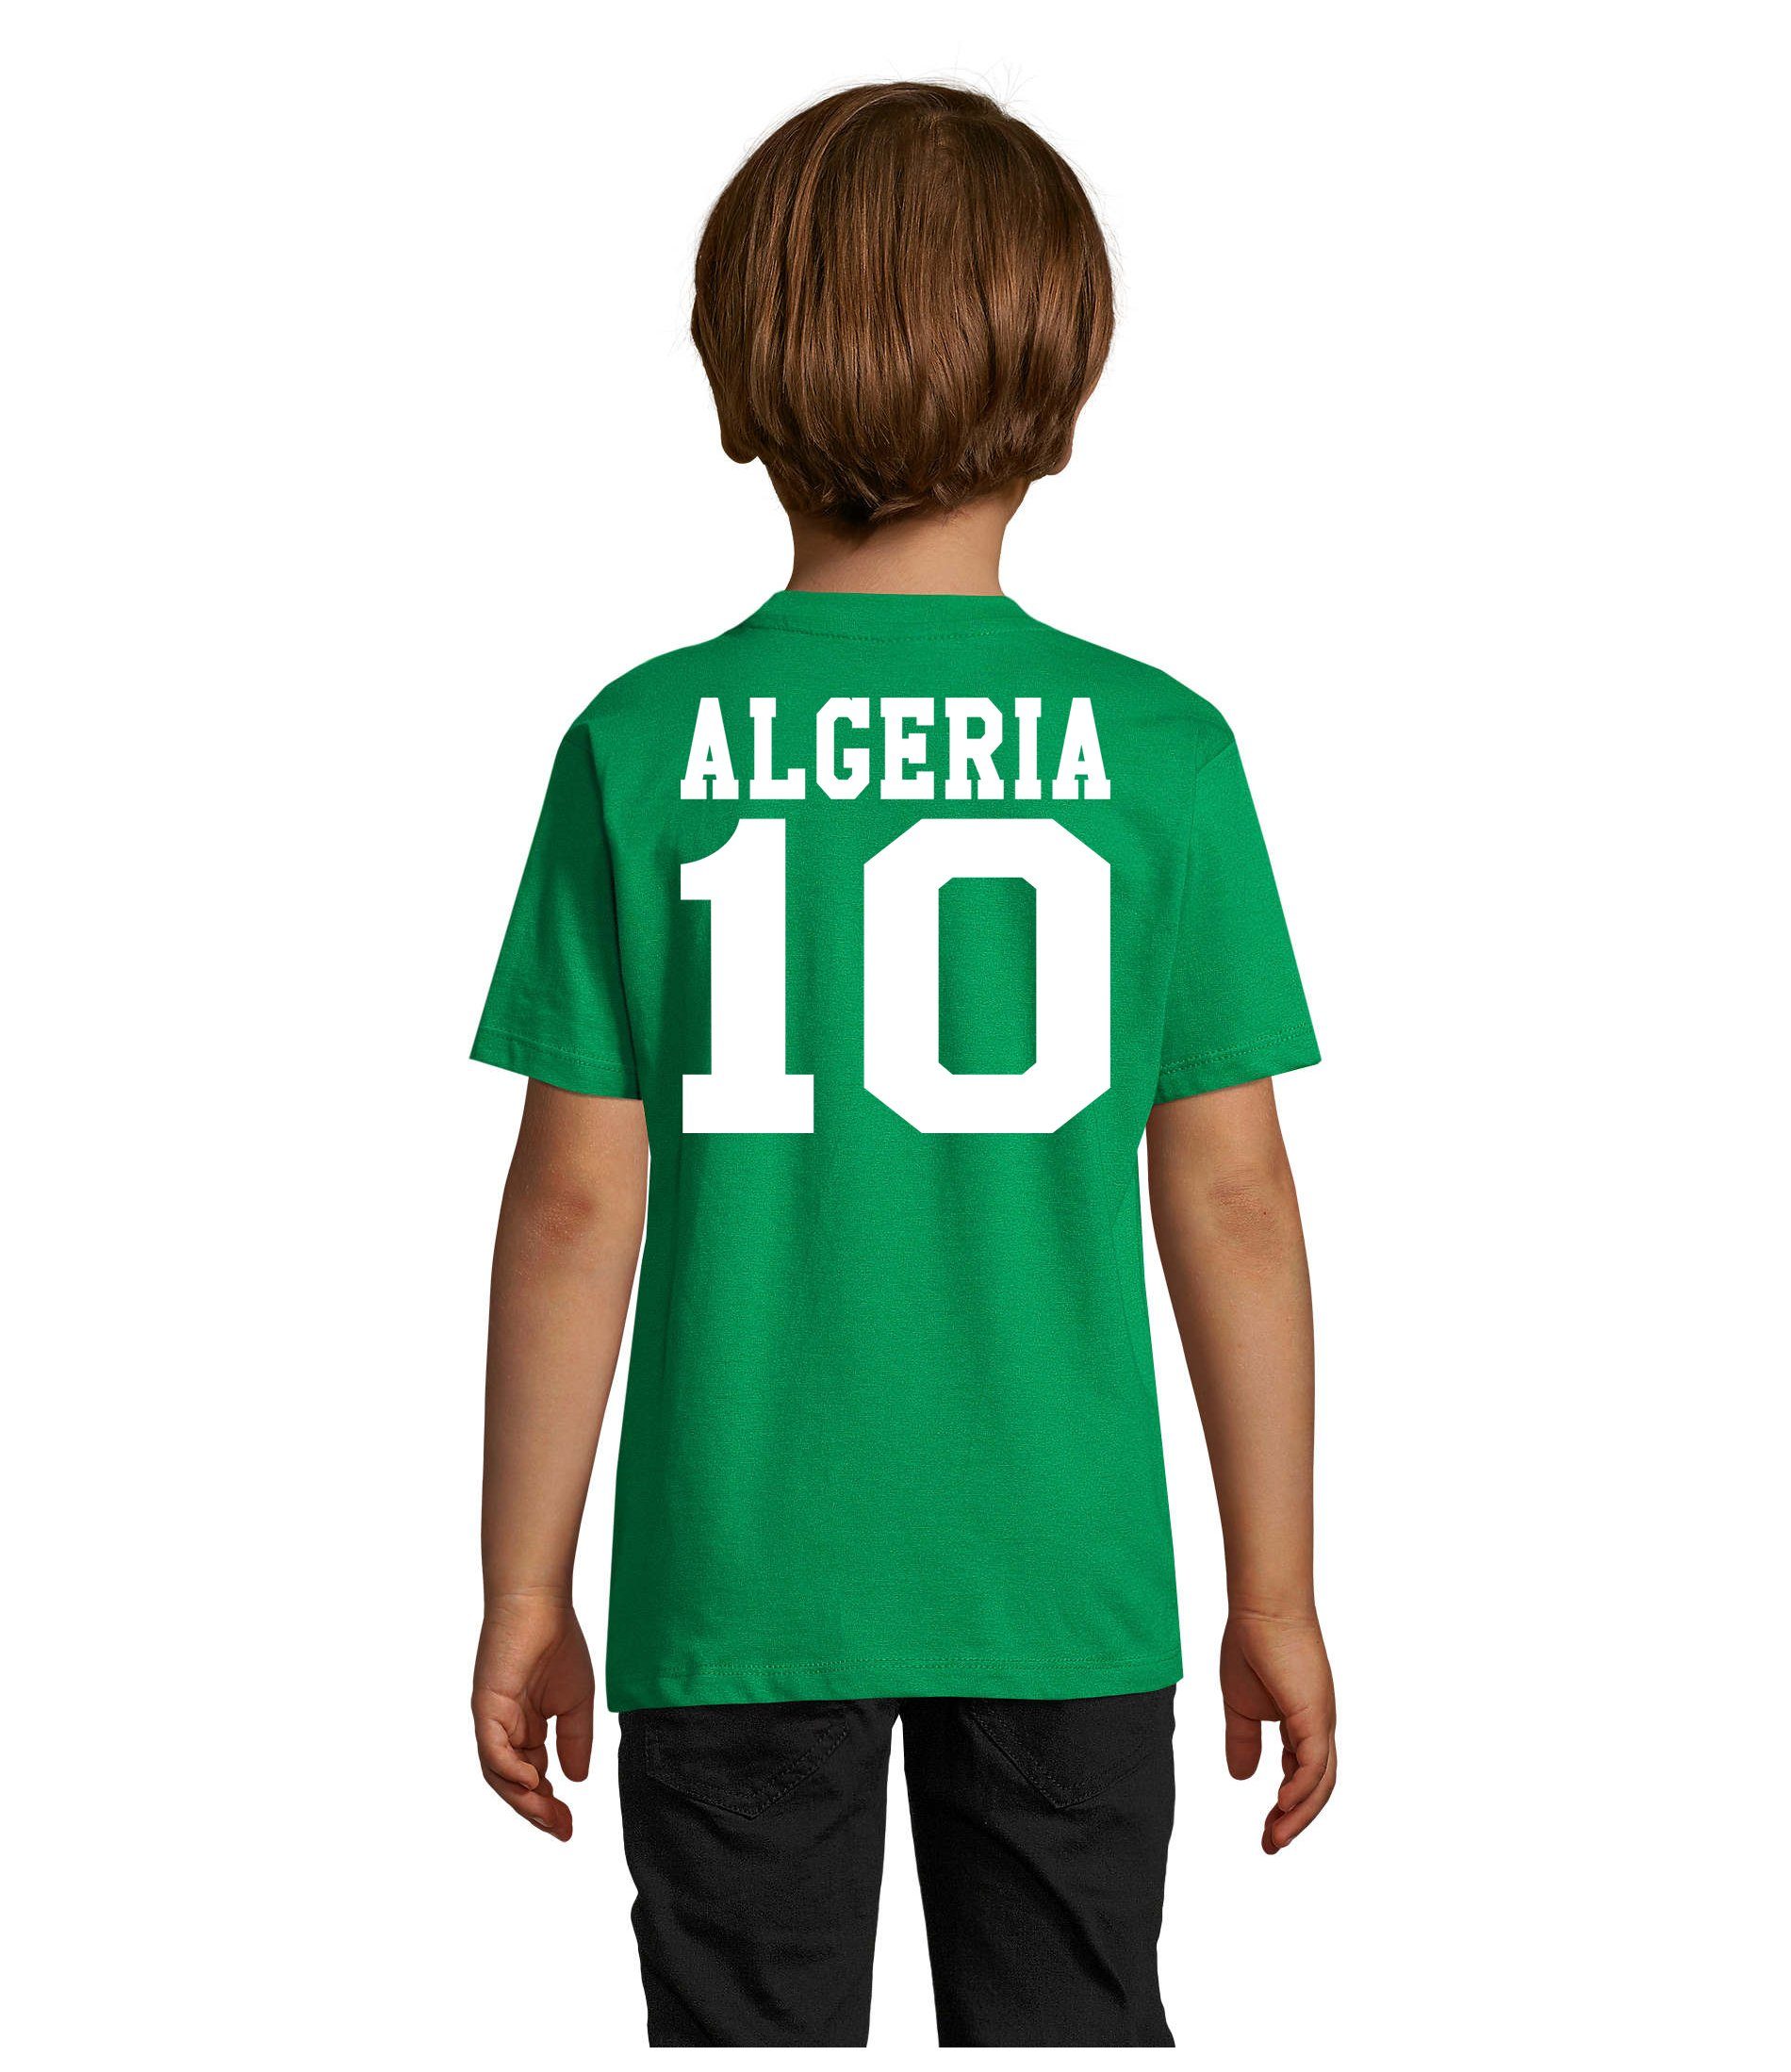 Blondie & Trikot Algeria Kinder Sport Fußball Afrika WM Brownie Algerien Weltmeister T-Shirt